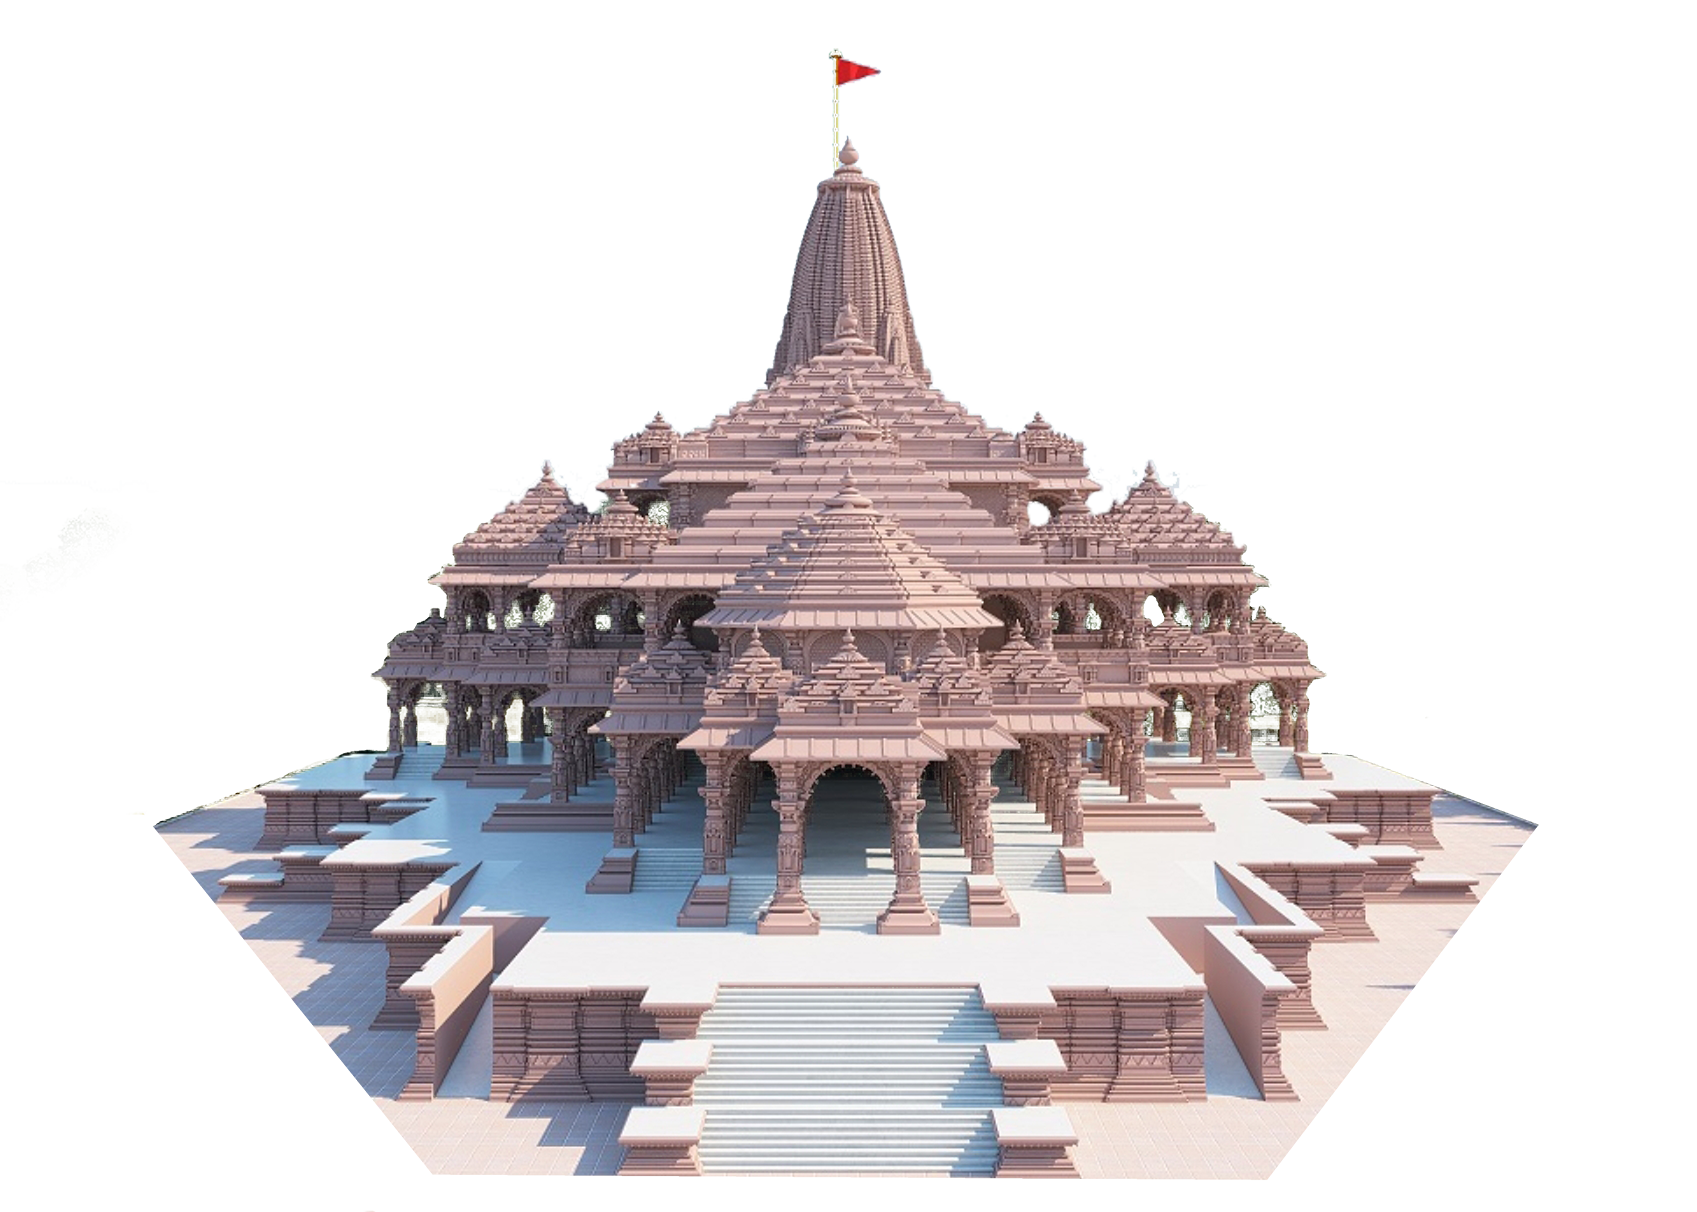 Ayodhya Ram Mandir PNG Image Free download